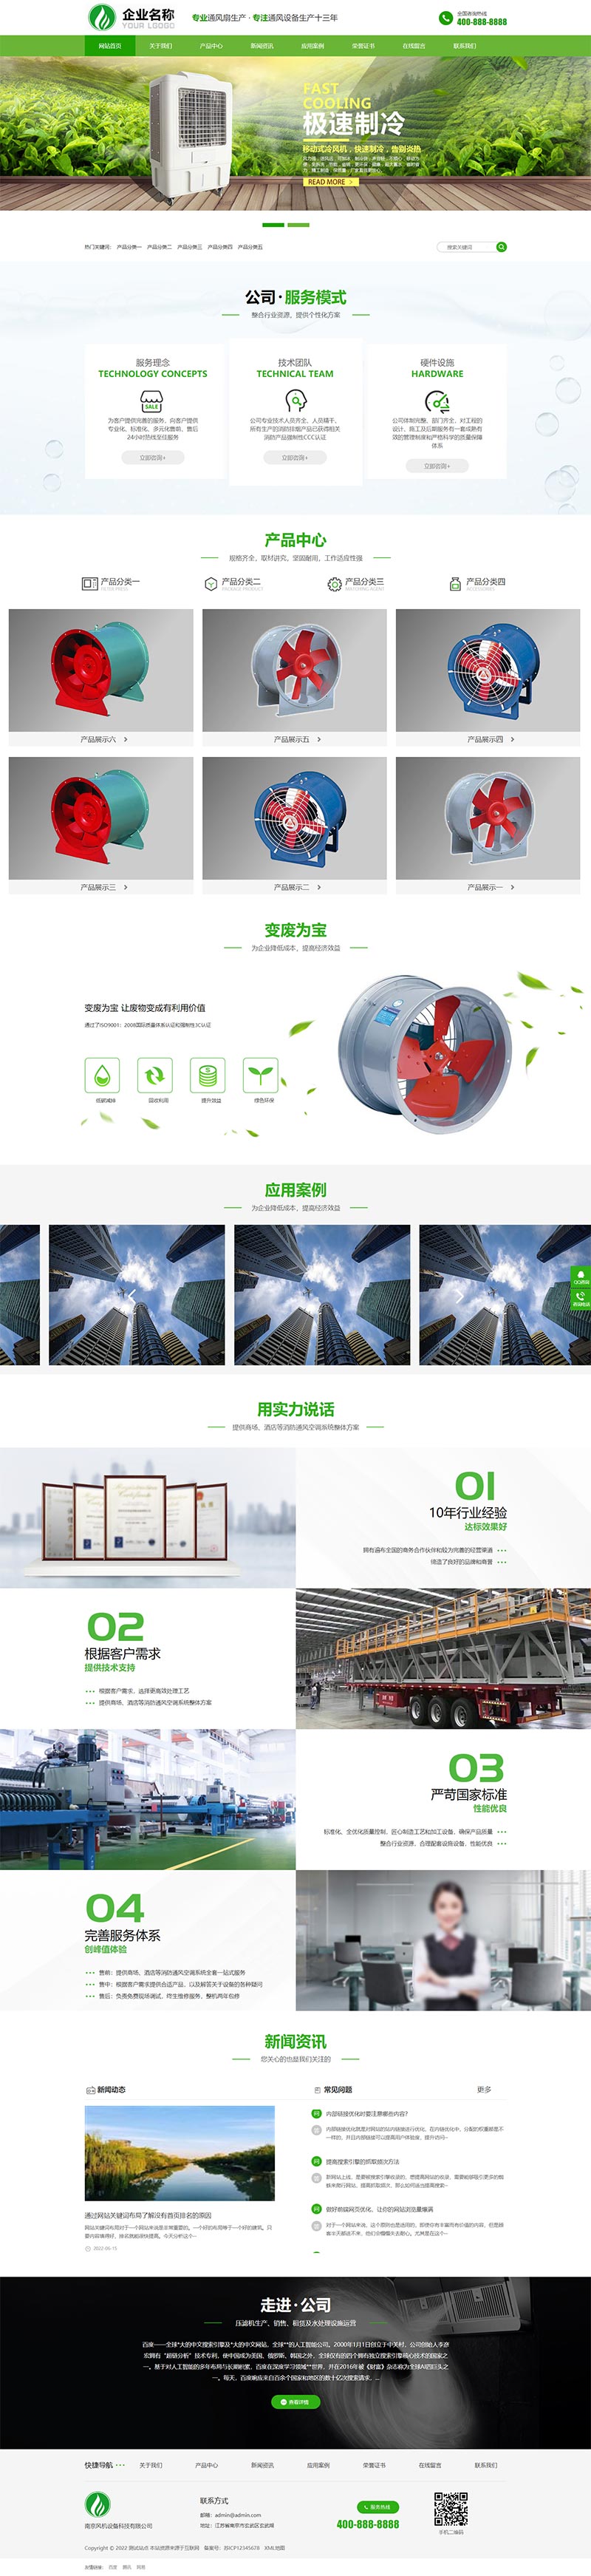 响应式HTML5风机机械设备企业营销型绿色大气环保机电pbootcms网站模板(自适应手机端)-1